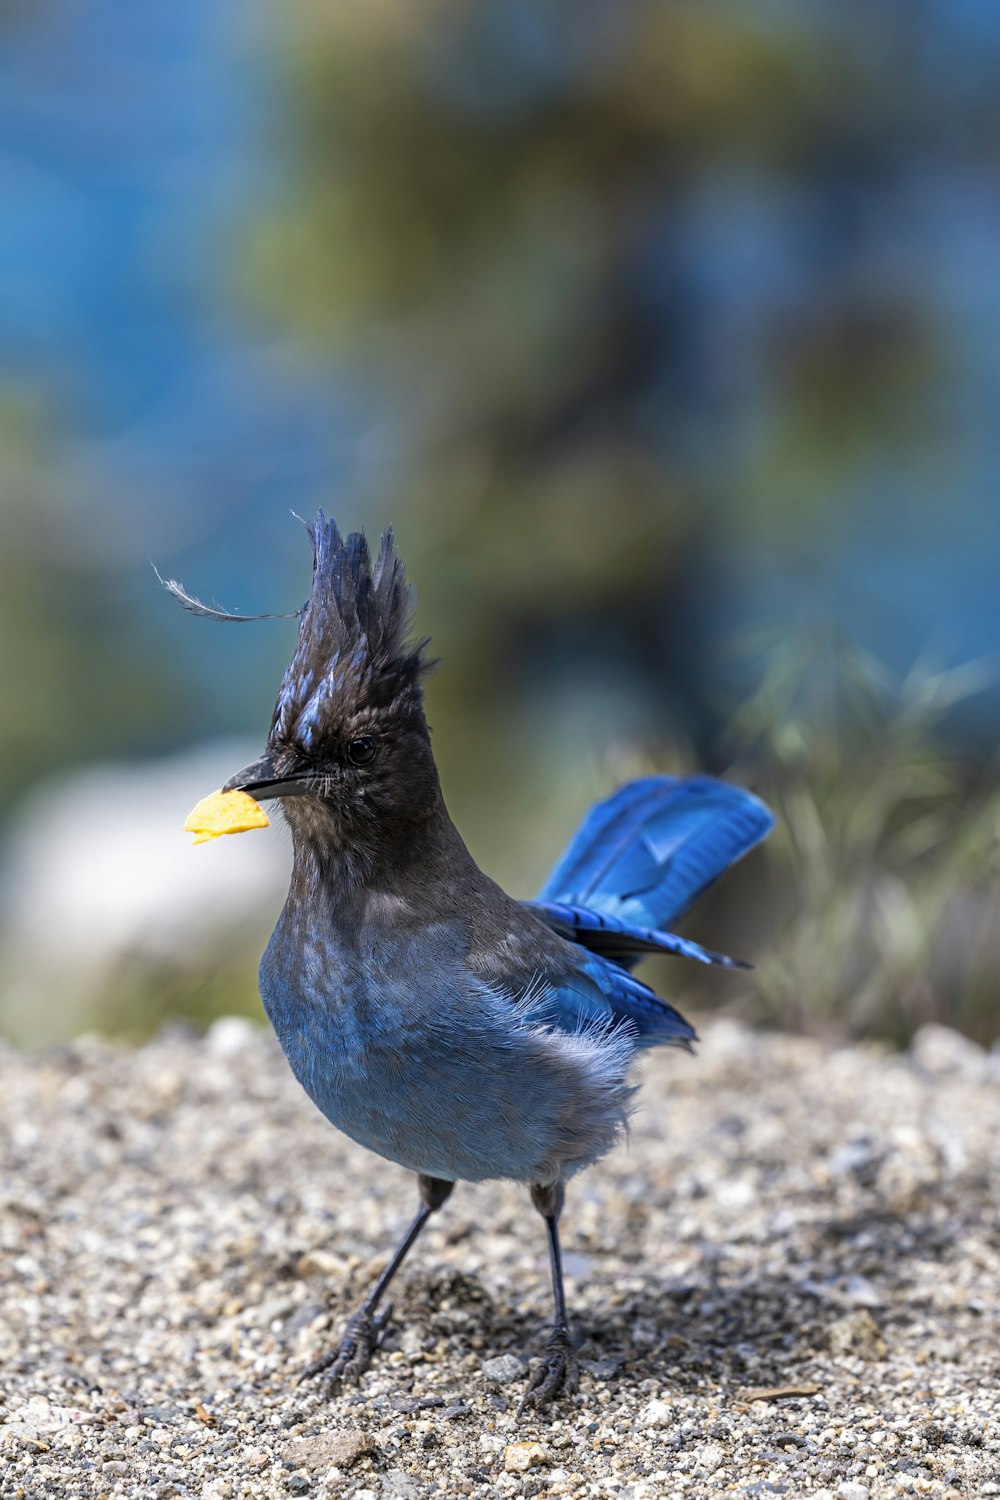 a blue bird with a yellow beak standing on a rock